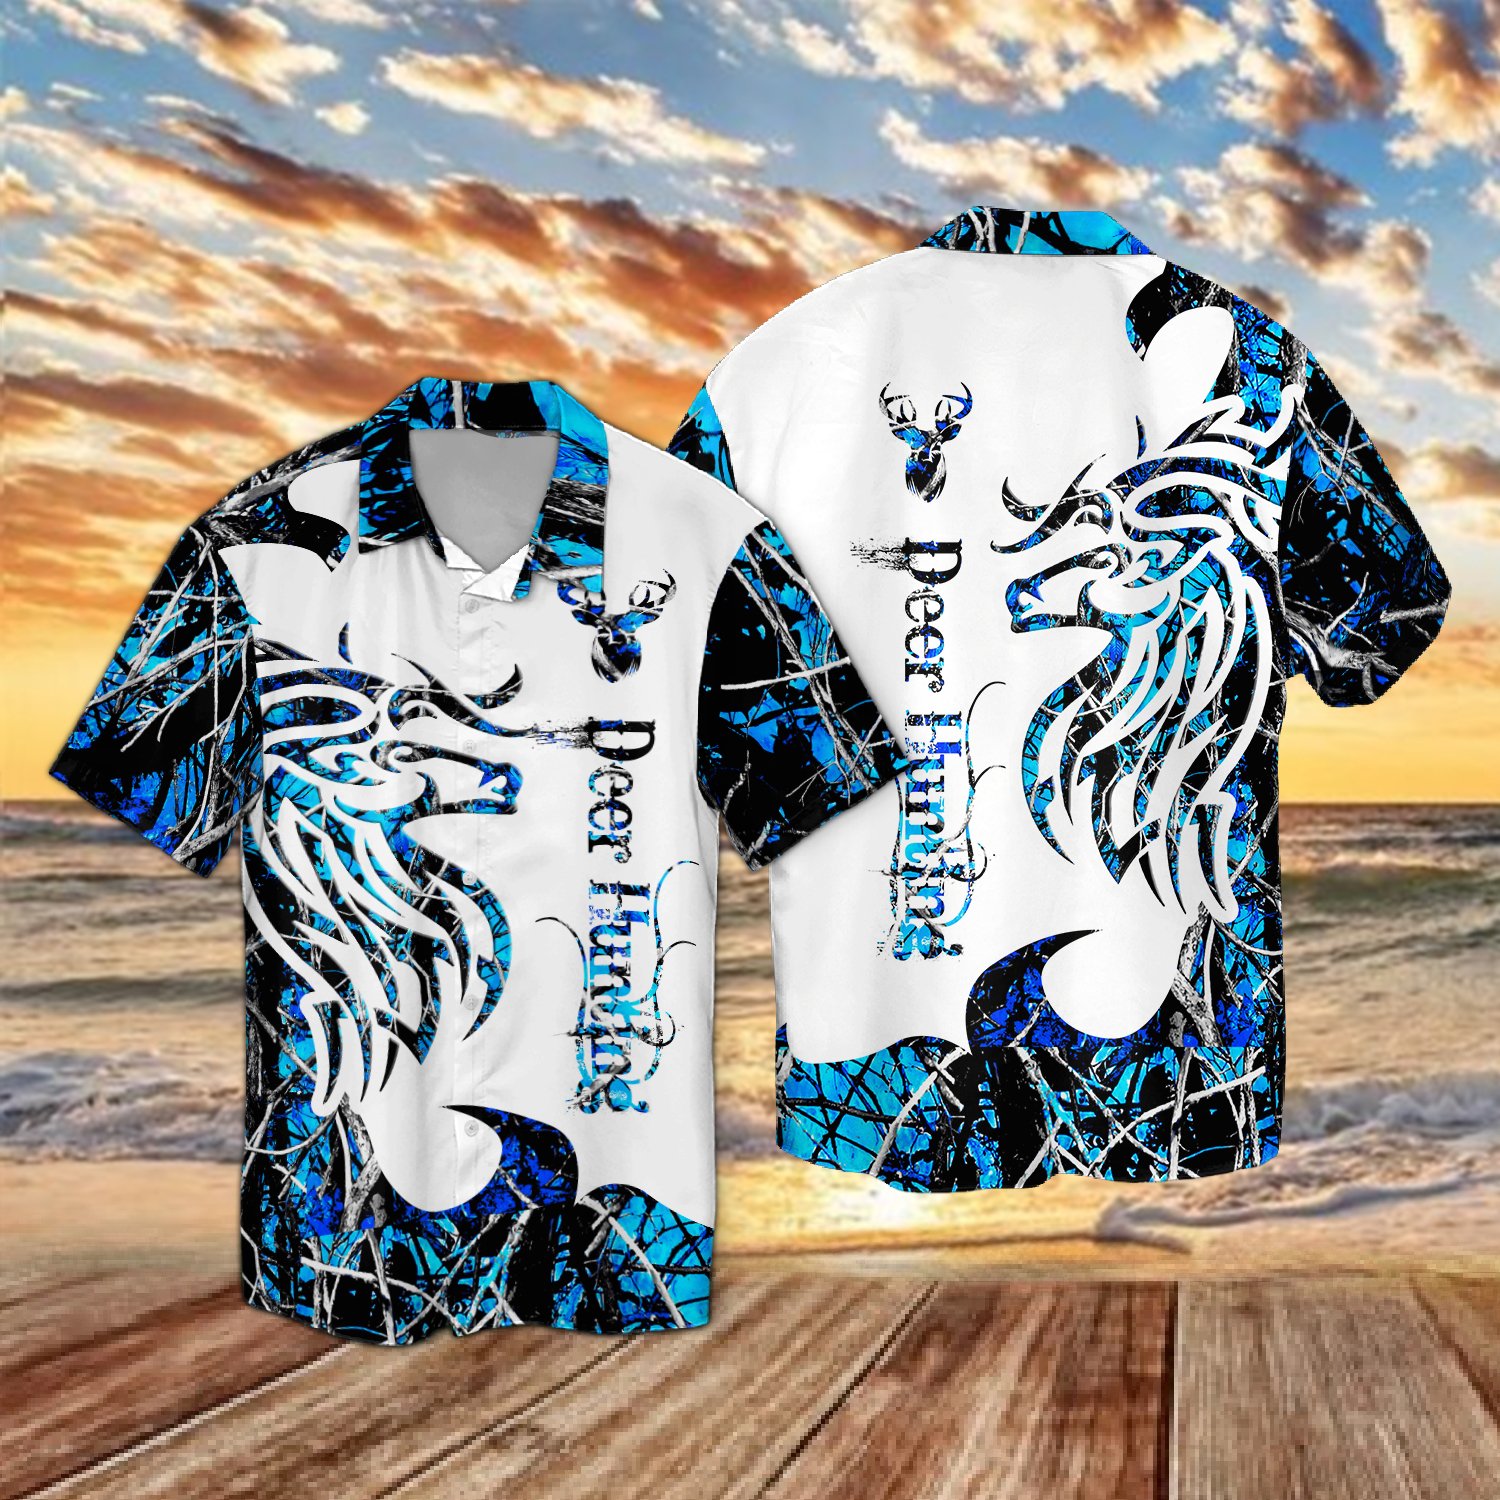 PLstar Cosmos 2022 Hot Summer Short sleeve Shirts Deer Hunting and Fishing 3D Printed Hawaii Shirt Mens Casual Beach Shirt CY-11